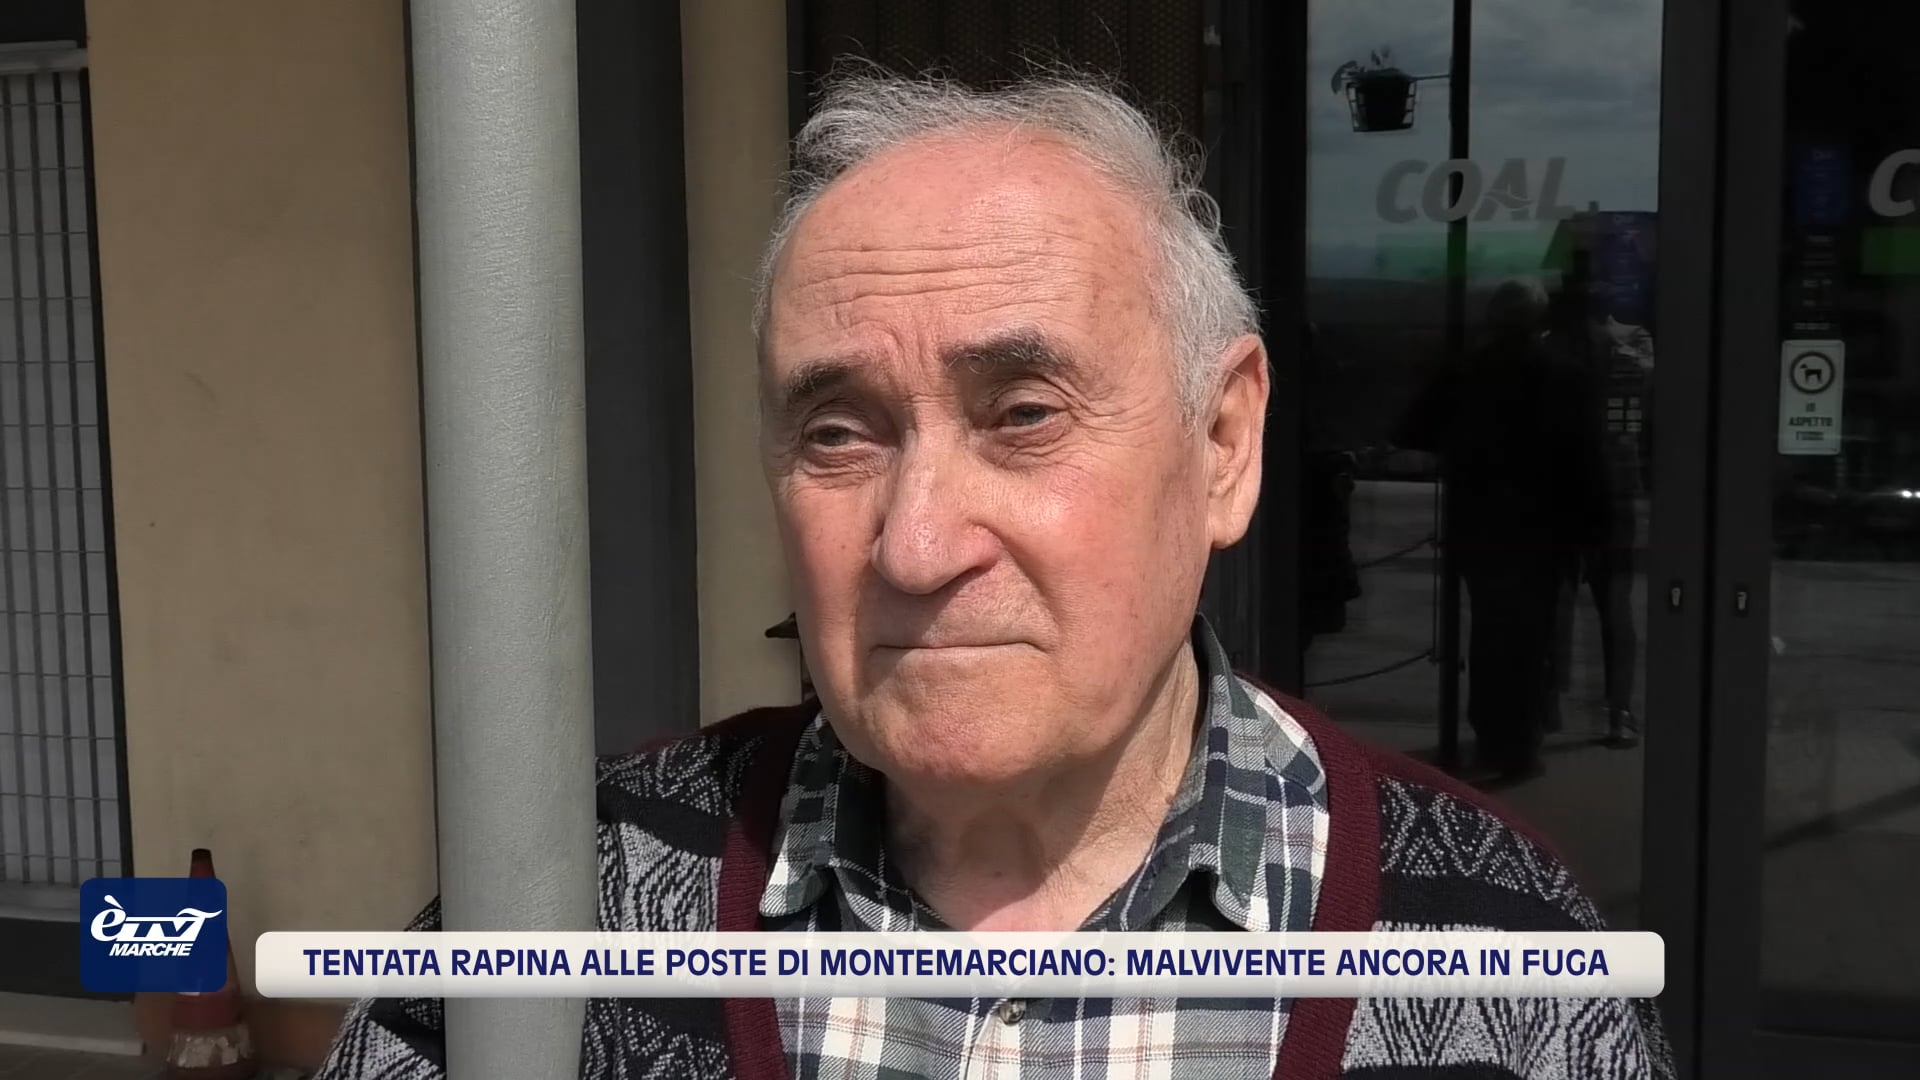 Tentata rapina alle poste di Montemarciano: malvivente ancora in fuga - VIDEO